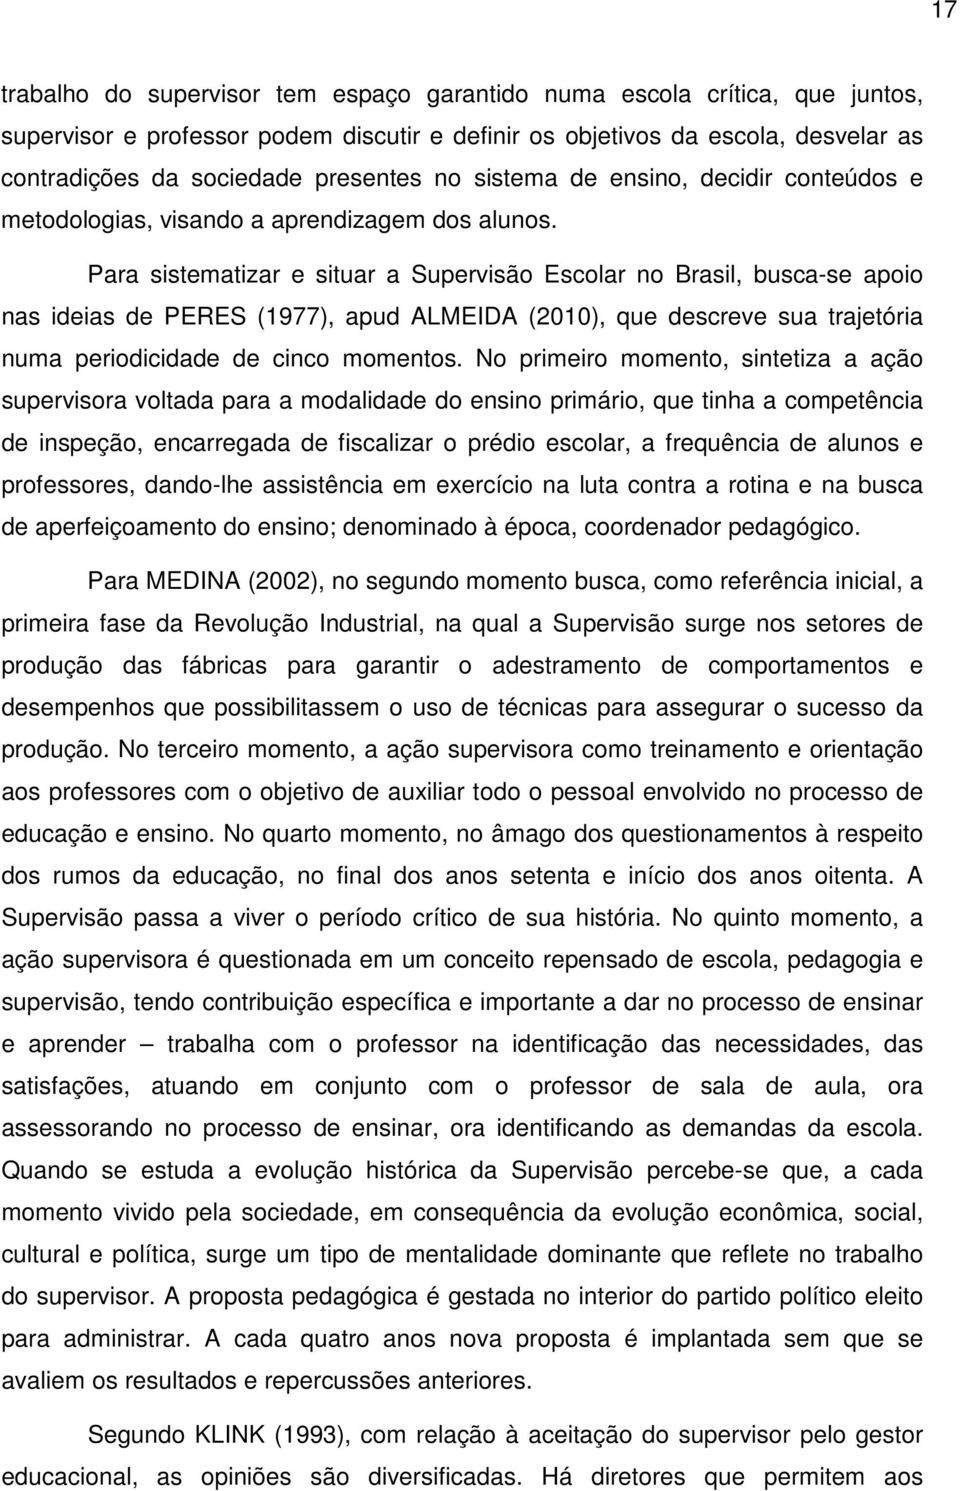 Para sistematizar e situar a Supervisão Escolar no Brasil, busca-se apoio nas ideias de PERES (1977), apud ALMEIDA (2010), que descreve sua trajetória numa periodicidade de cinco momentos.